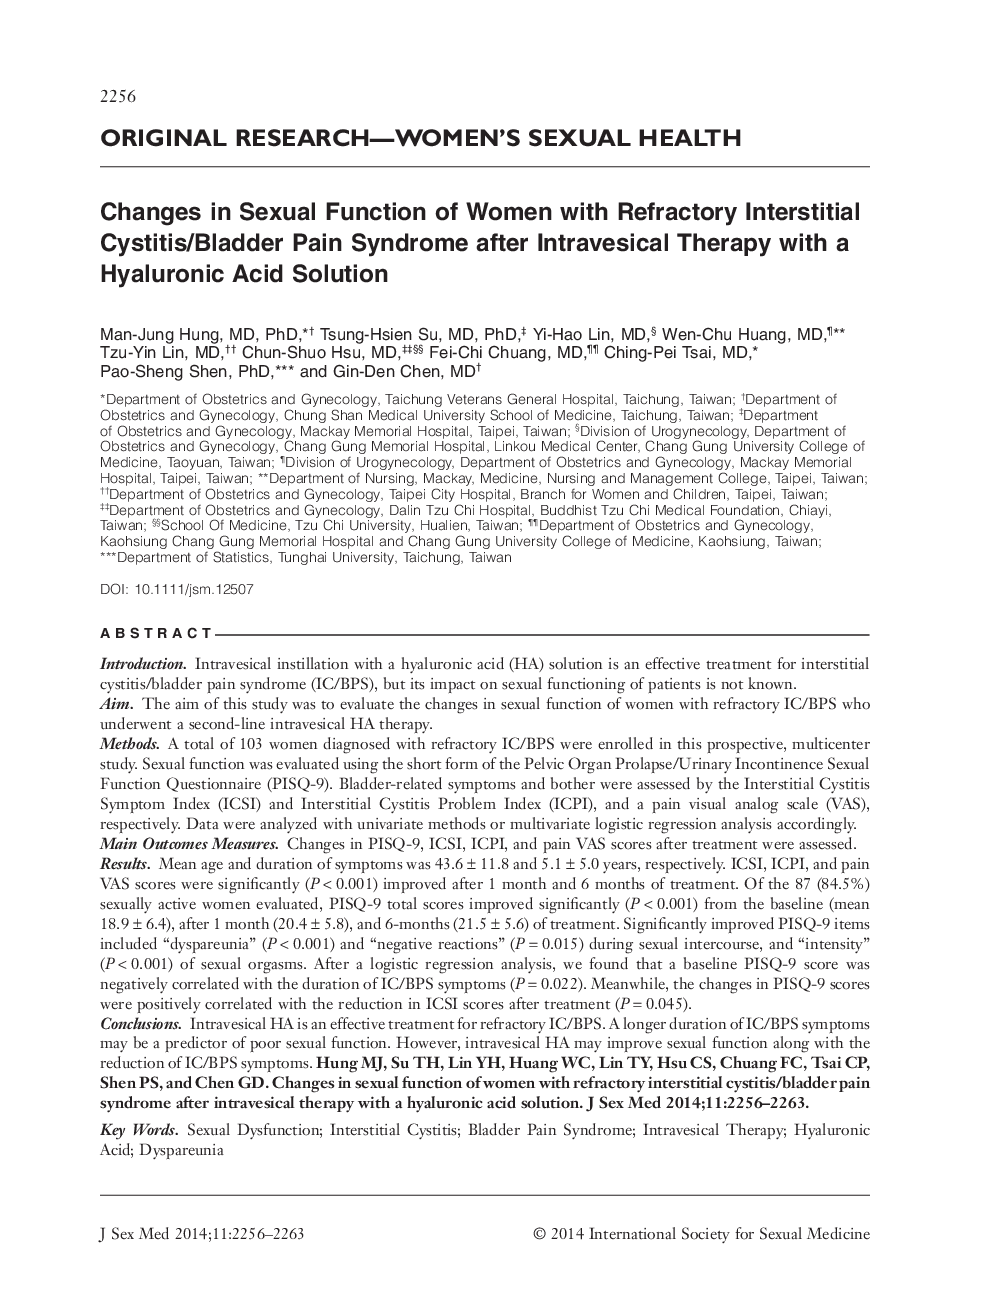 تغییرات در عملکرد جنسی زنان مبتلا به سندرم درد مثانه / مثانه پس از درمان جراحی با راه حل اسید هیالورونیک 